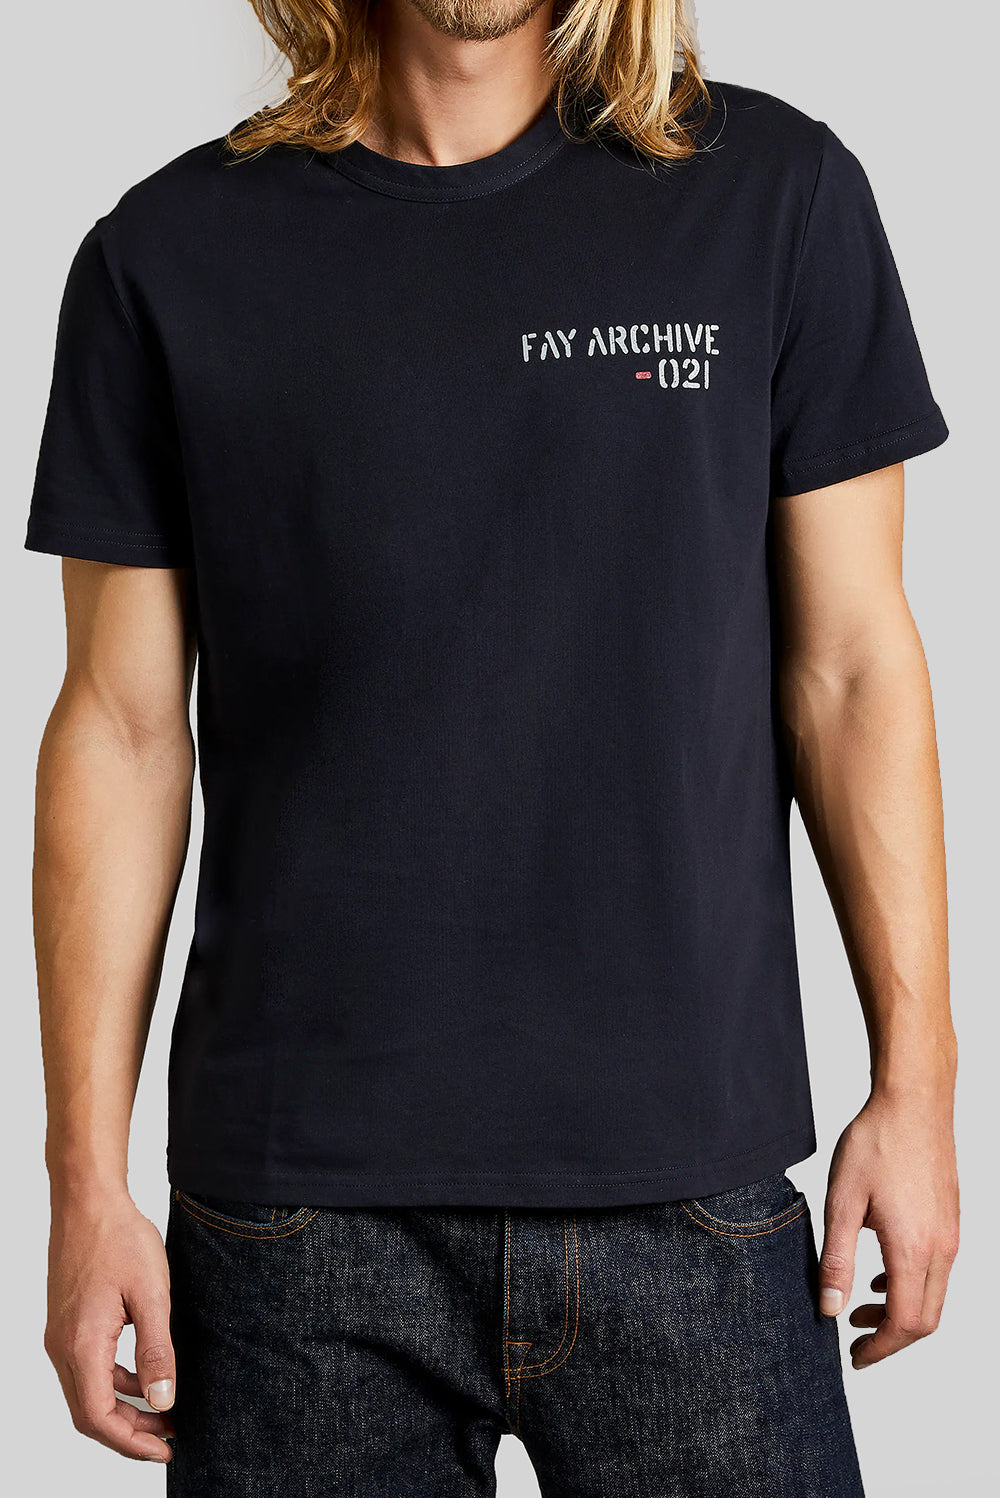  Fay Archive T-shirt Navy Uomo - 1